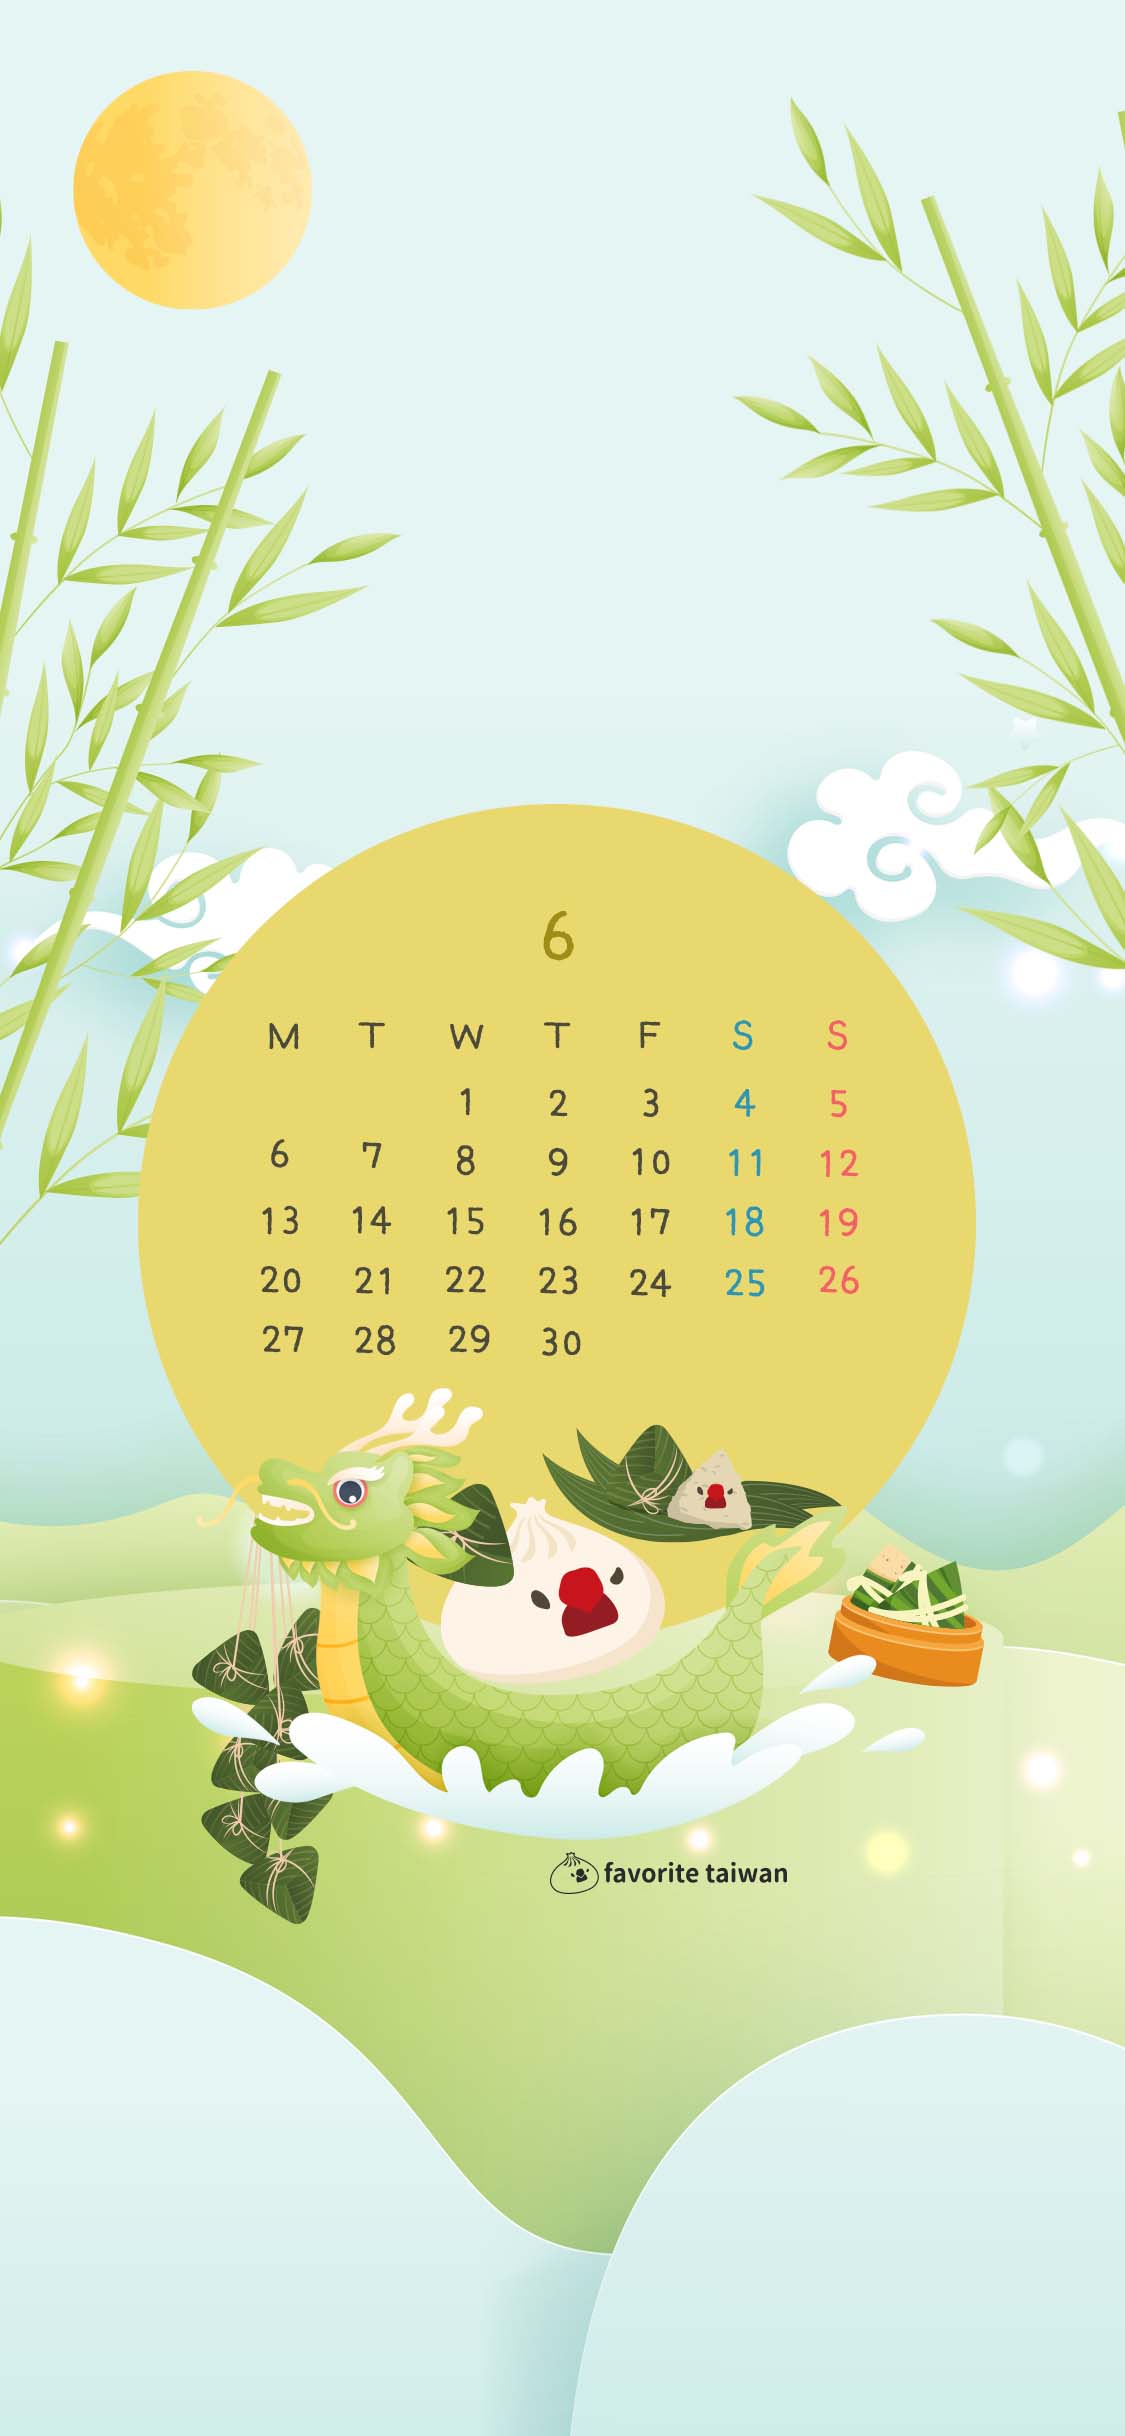 22年6月小籠包文鳥 壁紙カレンダープレゼント フェイバリット台湾